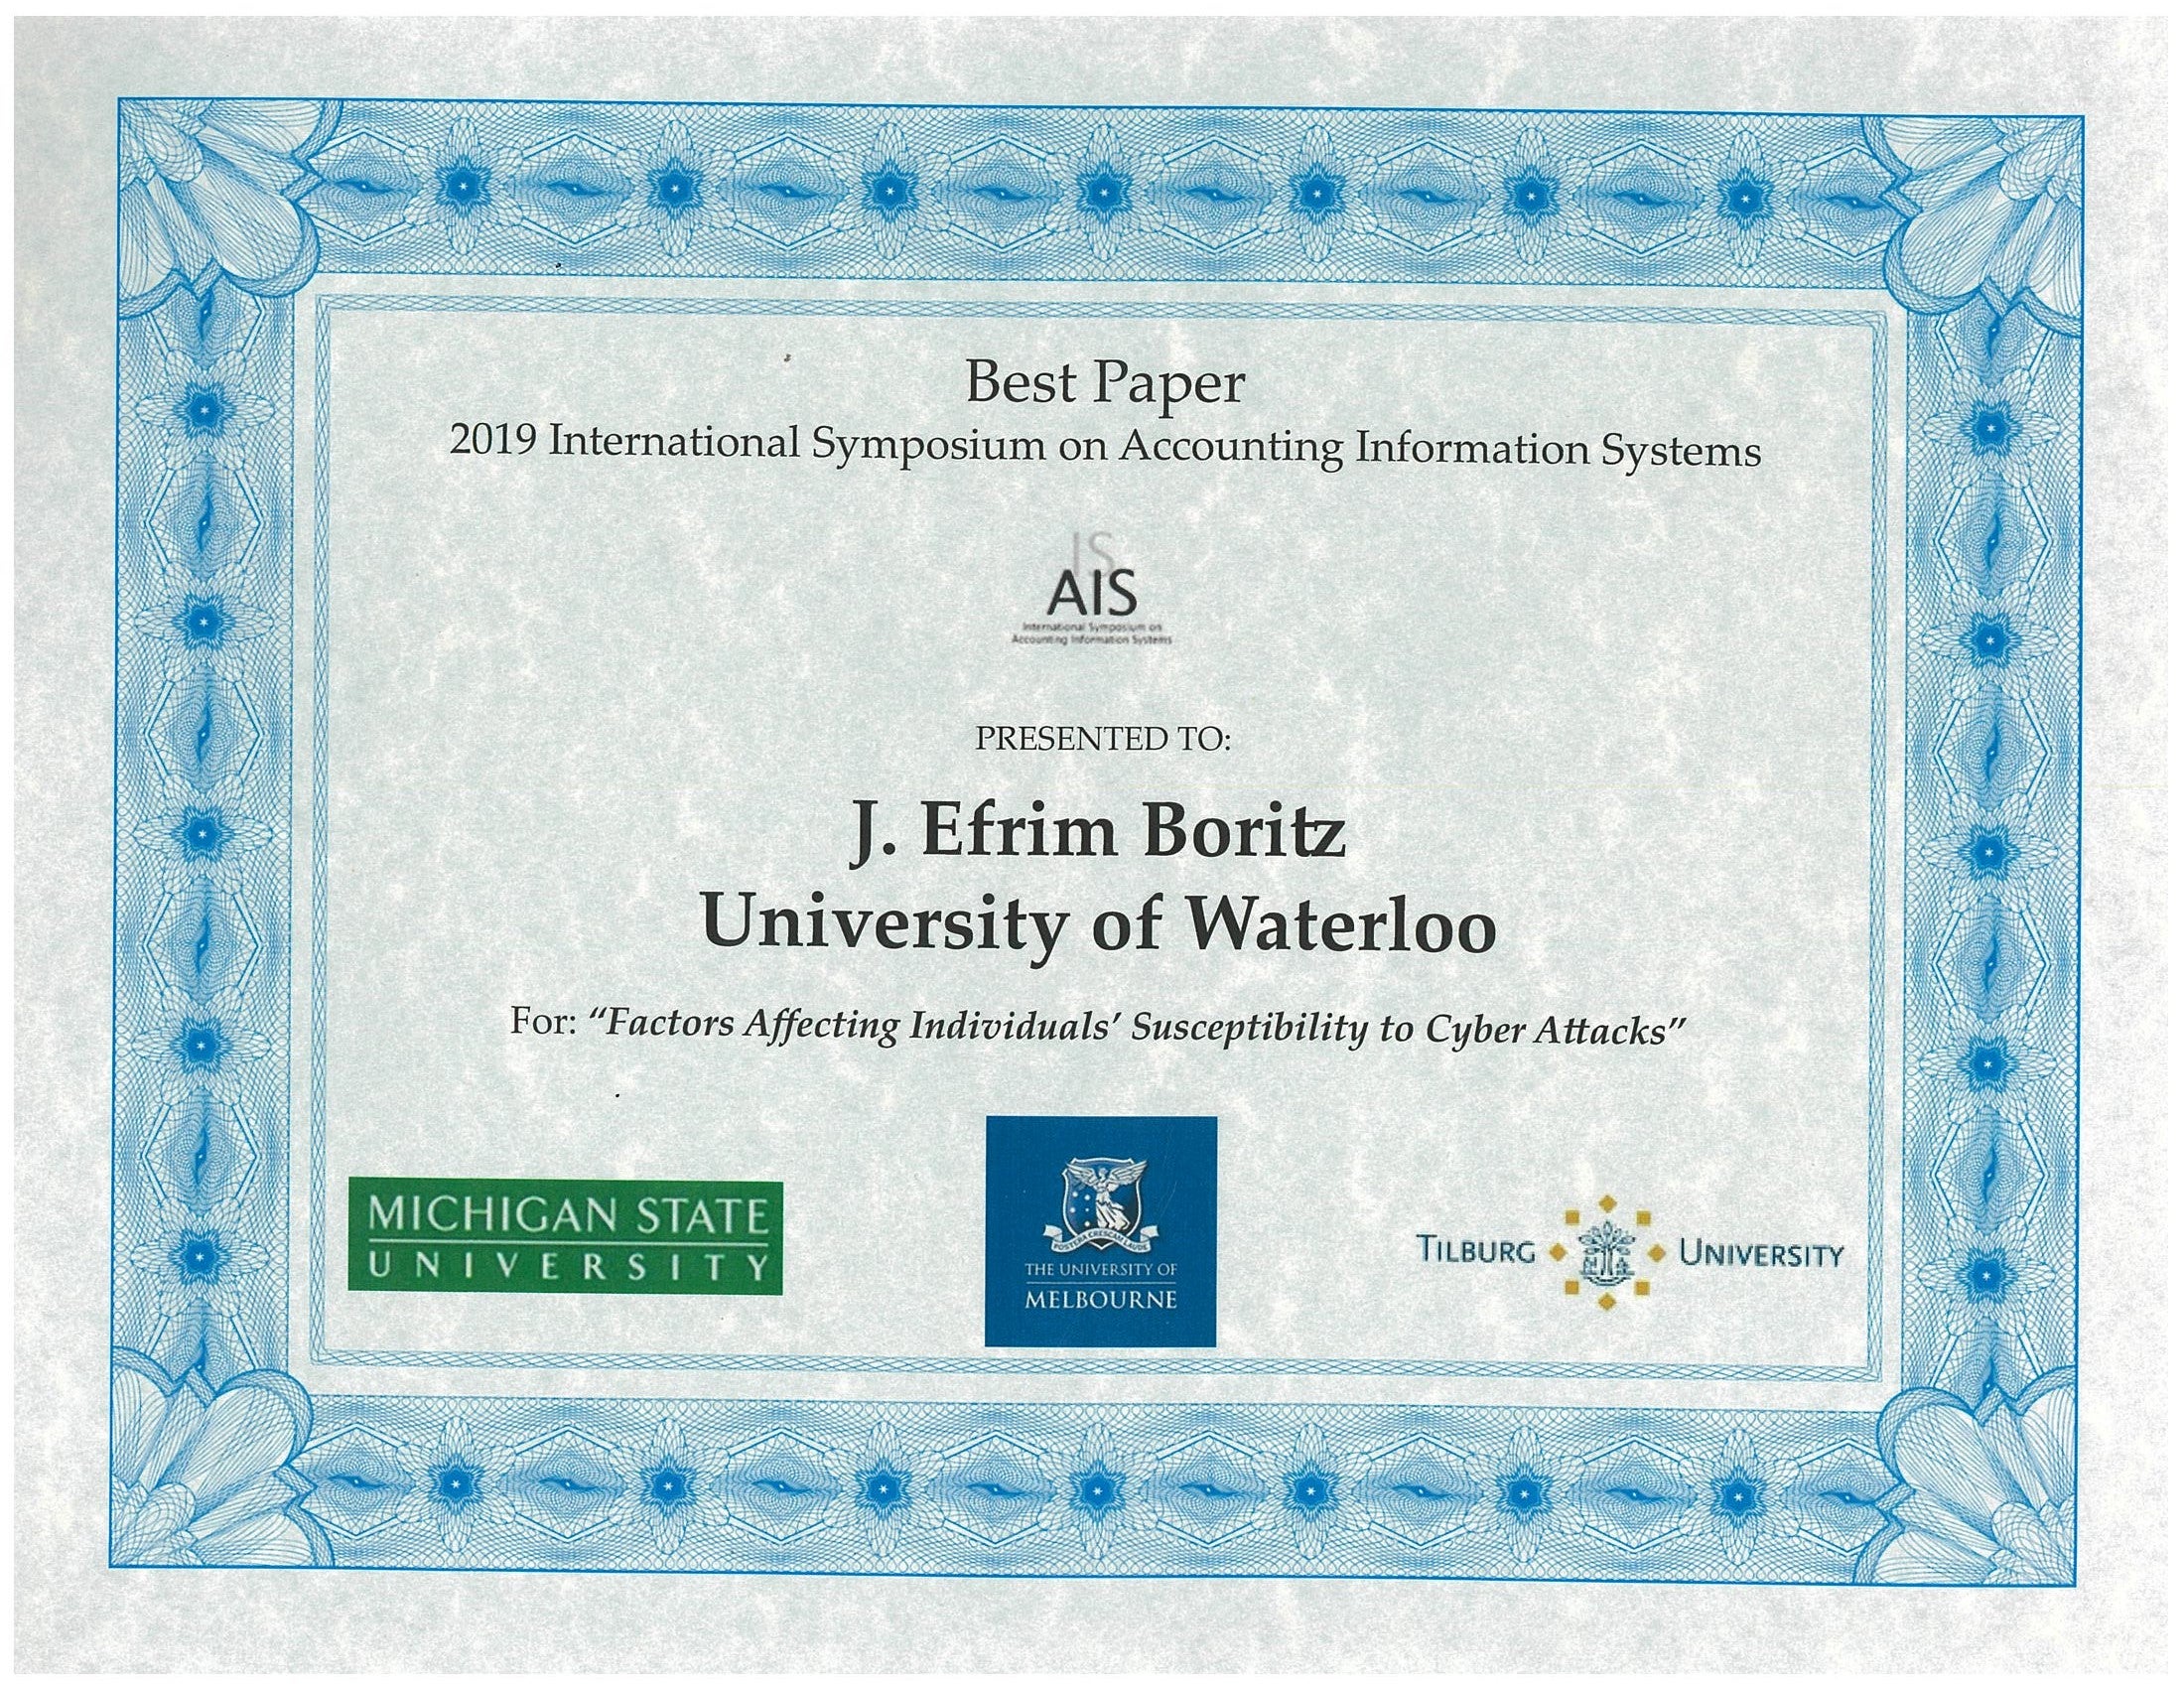 best paper award Efrim Boritz